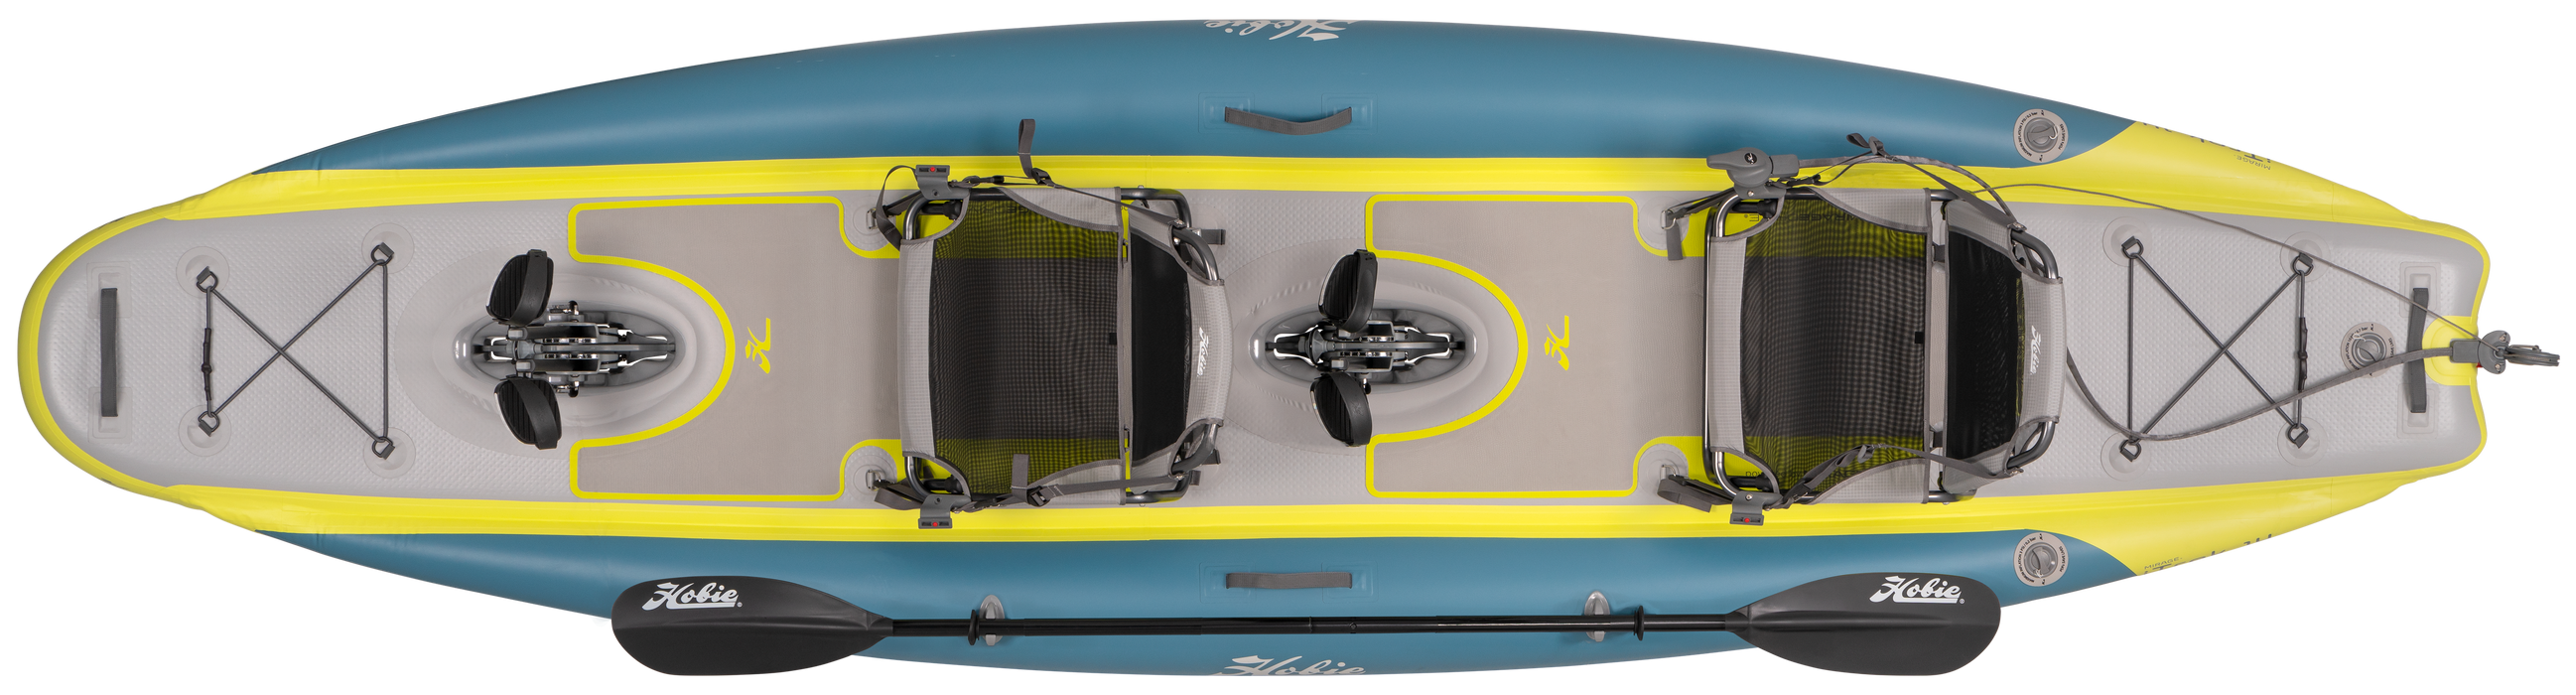 Hobie iTrek 14 Duo Inflatable Kayak